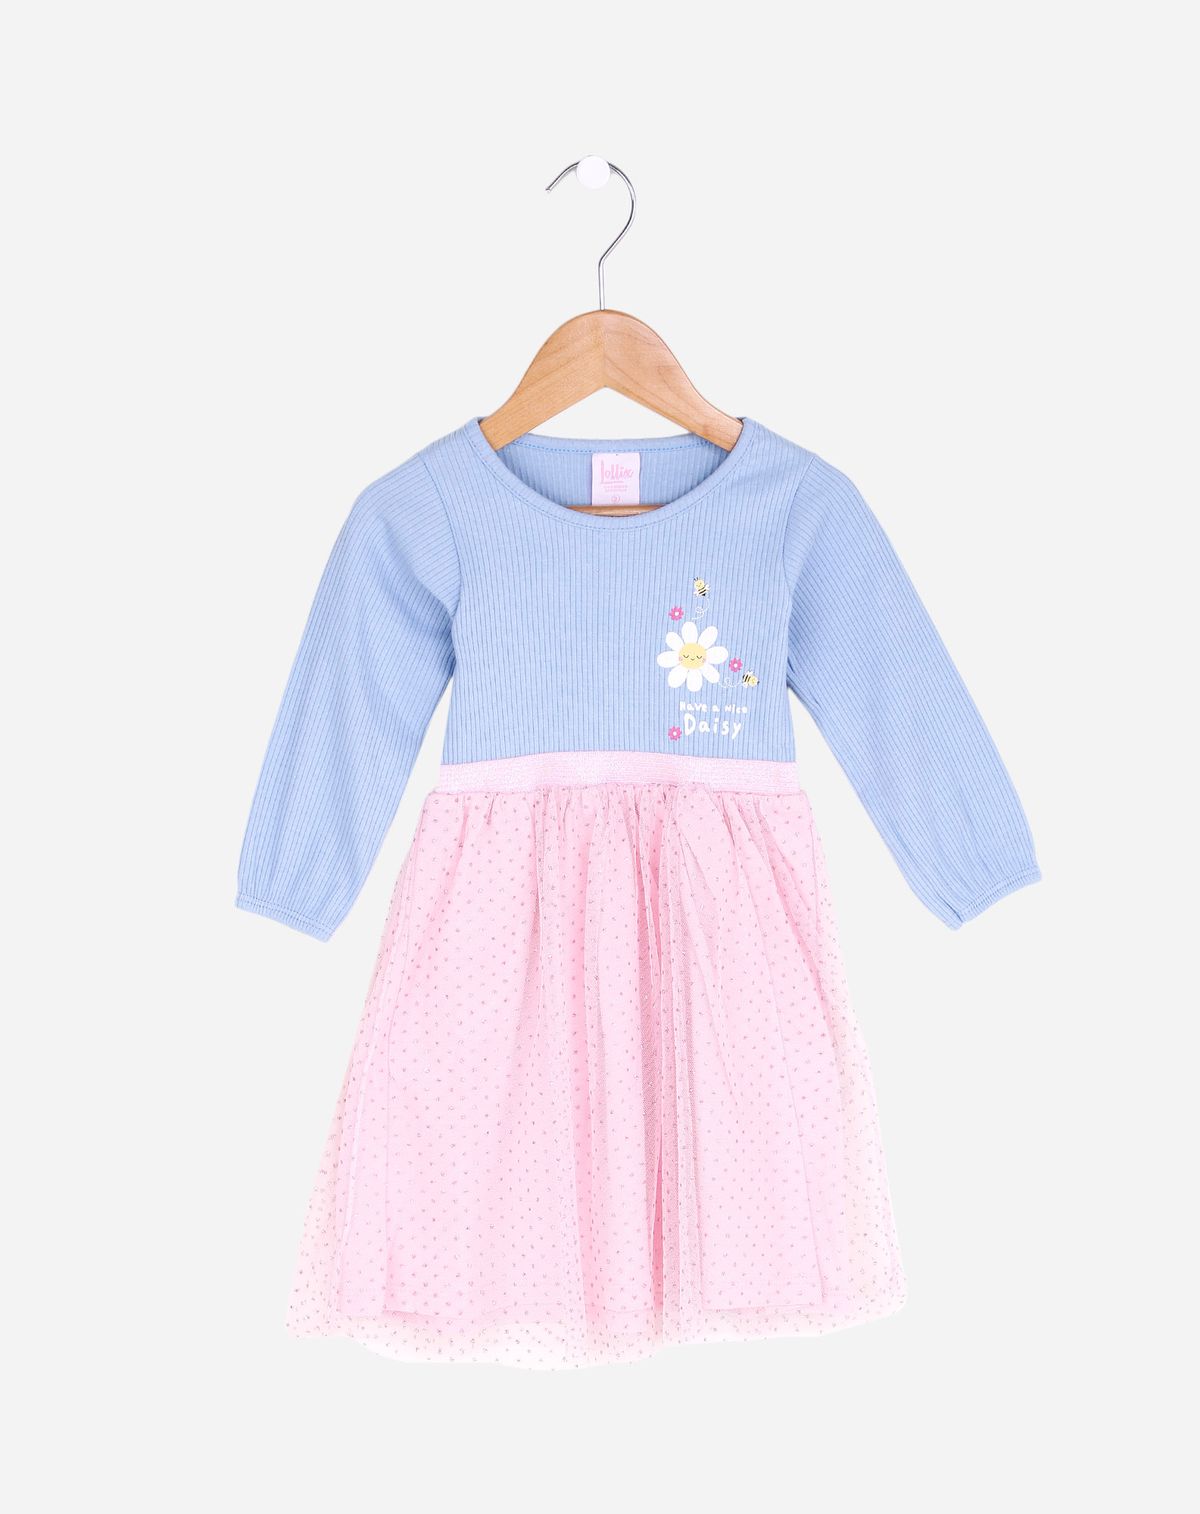 700501001-vestido-manga-longa-infantil-menina-–-tam.-1-a-3-anos-azul-rosa-1-6a9